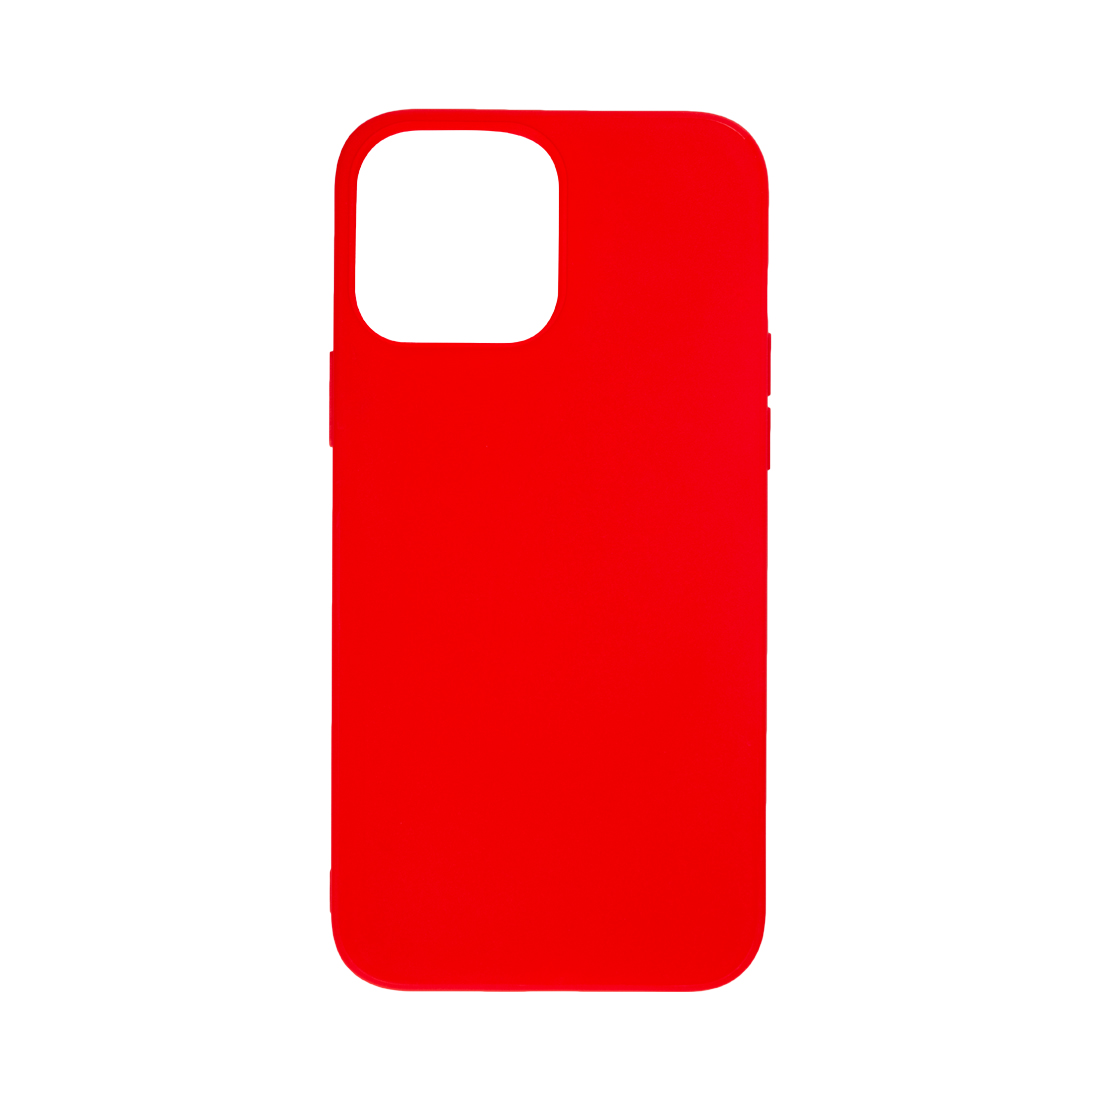 картинка Чехол для телефона X-Game XG-PR95 для Iphone 13 Pro TPU Красный от магазина itmag.kz